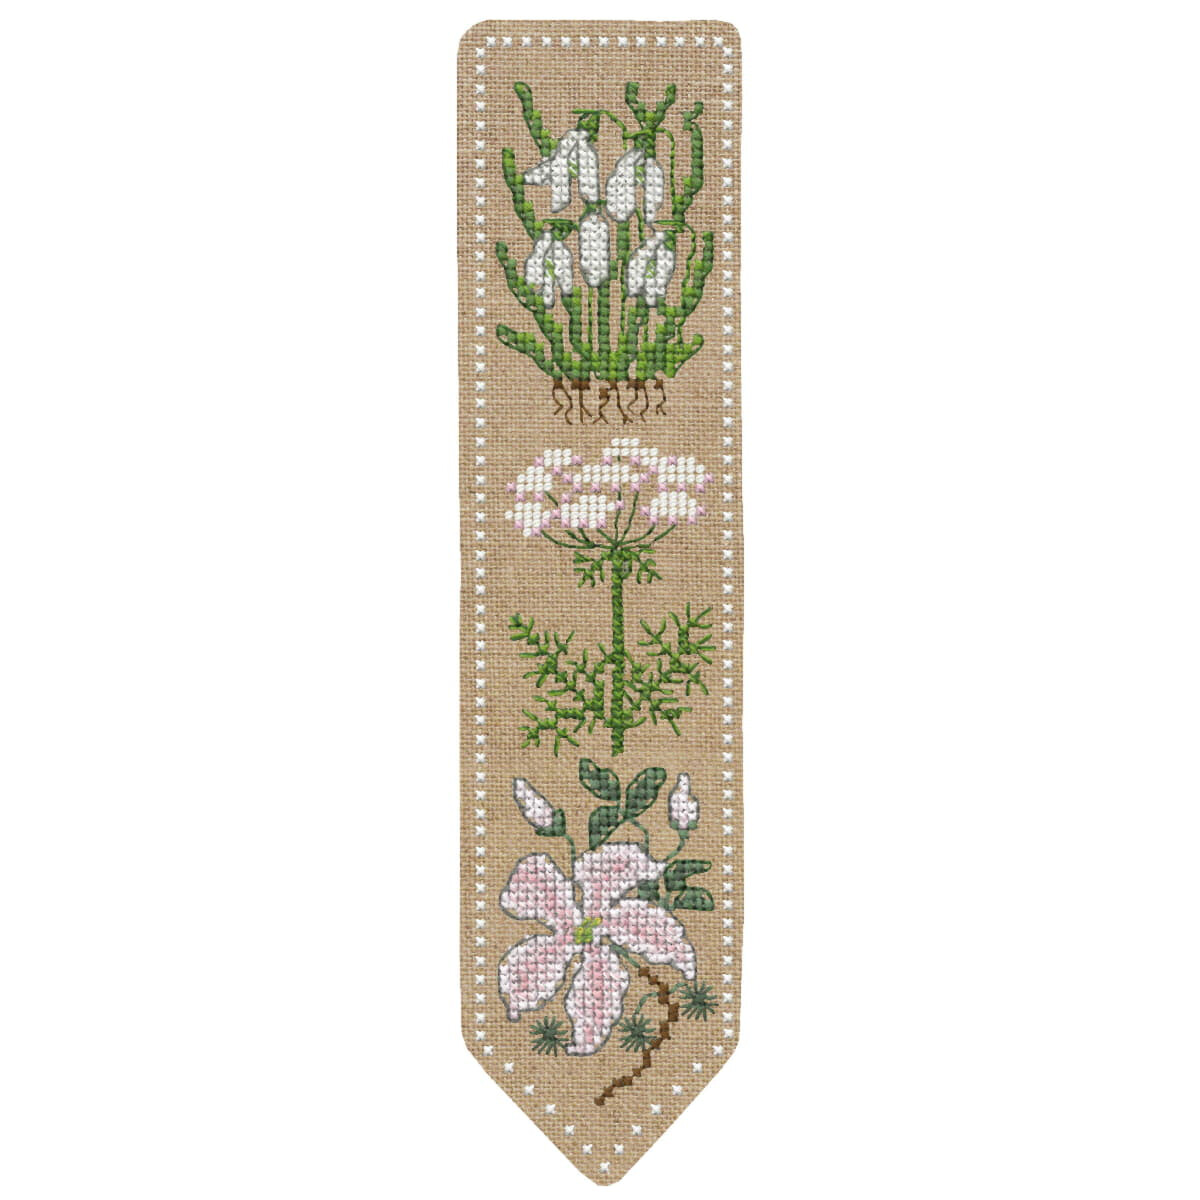 Закладка Le Bonheur des Dames набор для вышивки крестом...